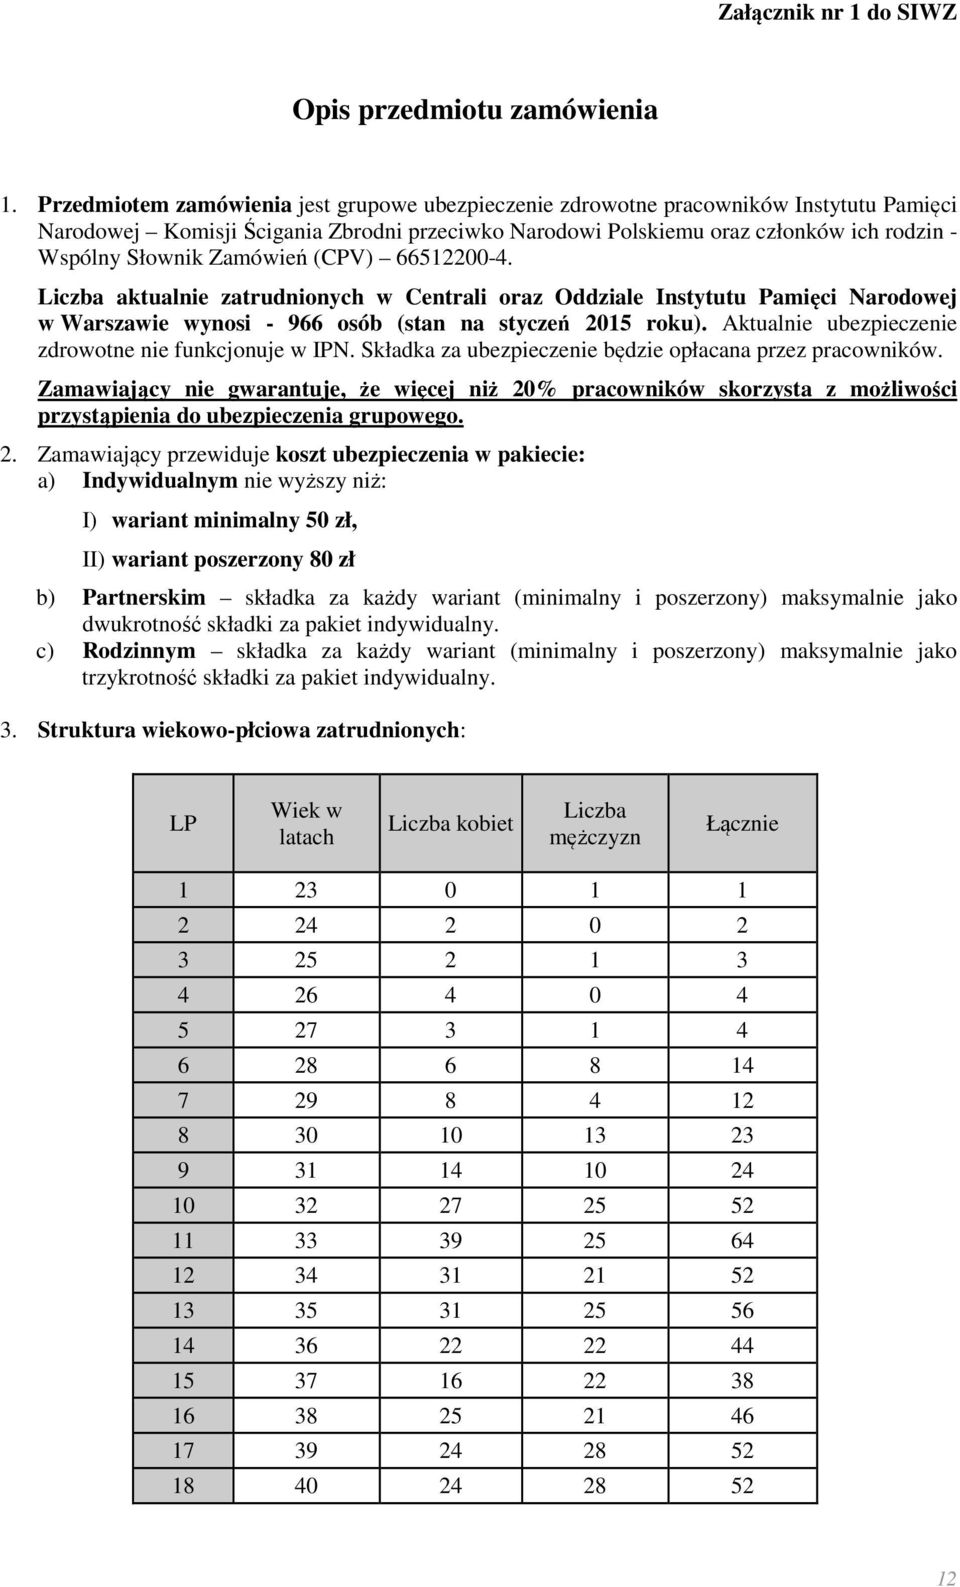 Zamówień (CPV) 66512200-4. Liczba aktualnie zatrudnionych w Centrali oraz Oddziale Instytutu Pamięci Narodowej w Warszawie wynosi - 966 osób (stan na styczeń 2015 roku).